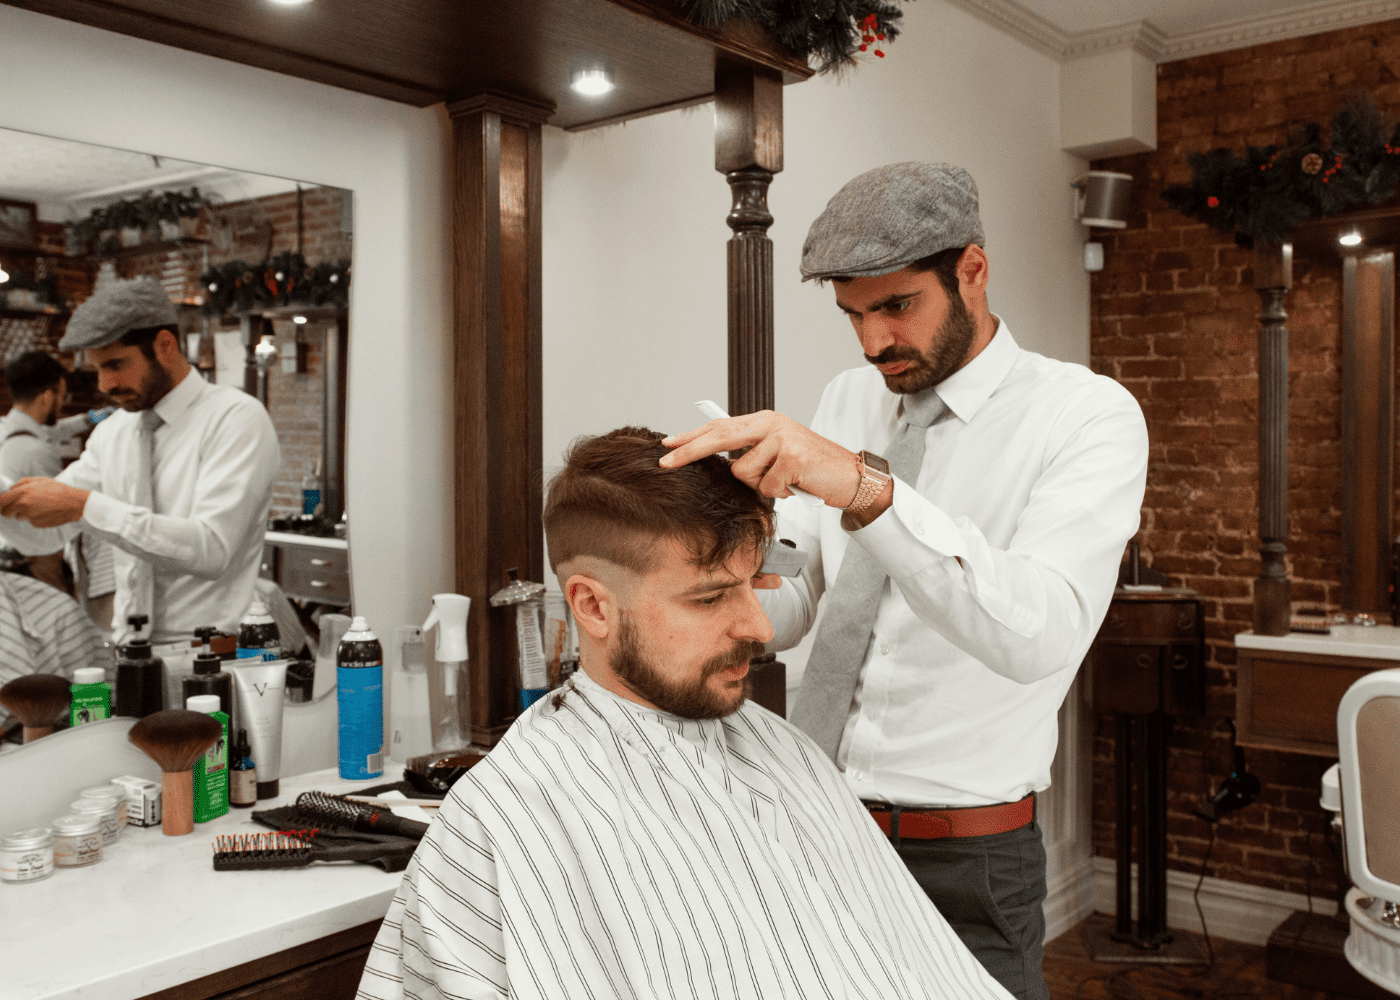 Nijmegen’s Premier Barbershop: Your Ultimate Barber Experience